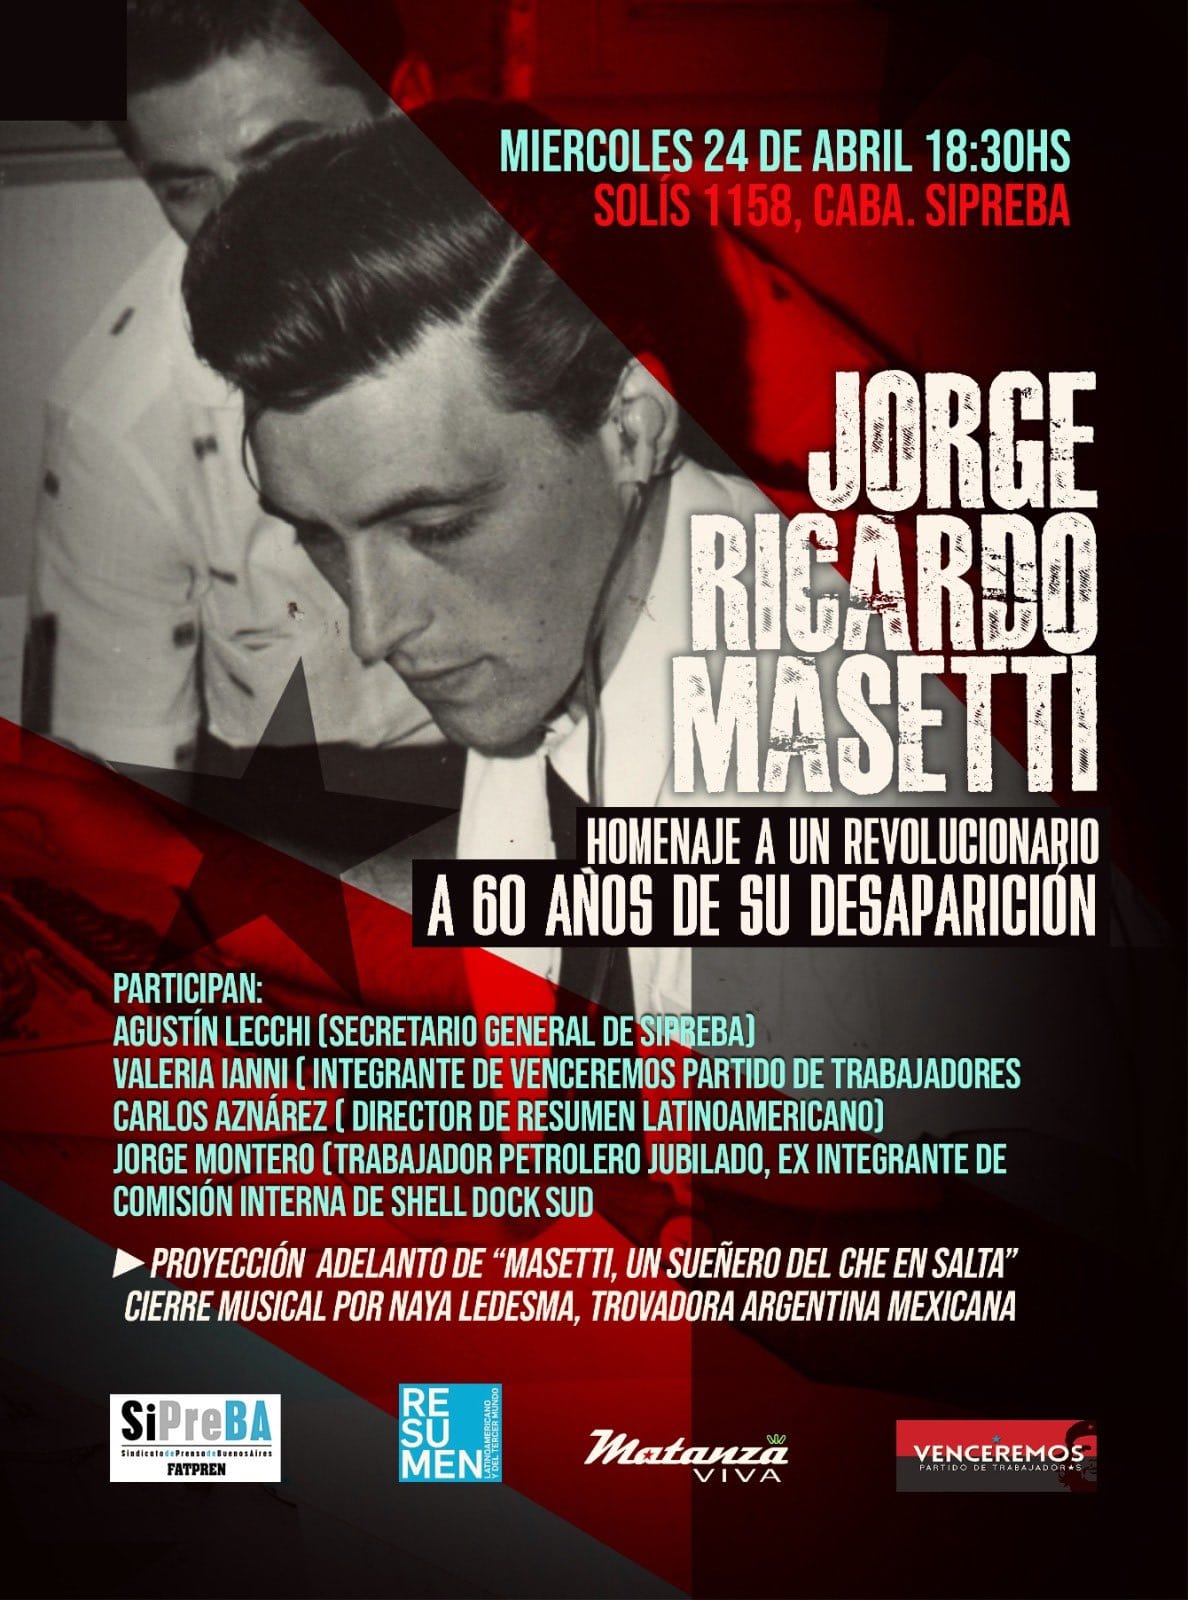 “Homenaje a un revolucionario”: una charla sobre Jorge Ricardo Masetti